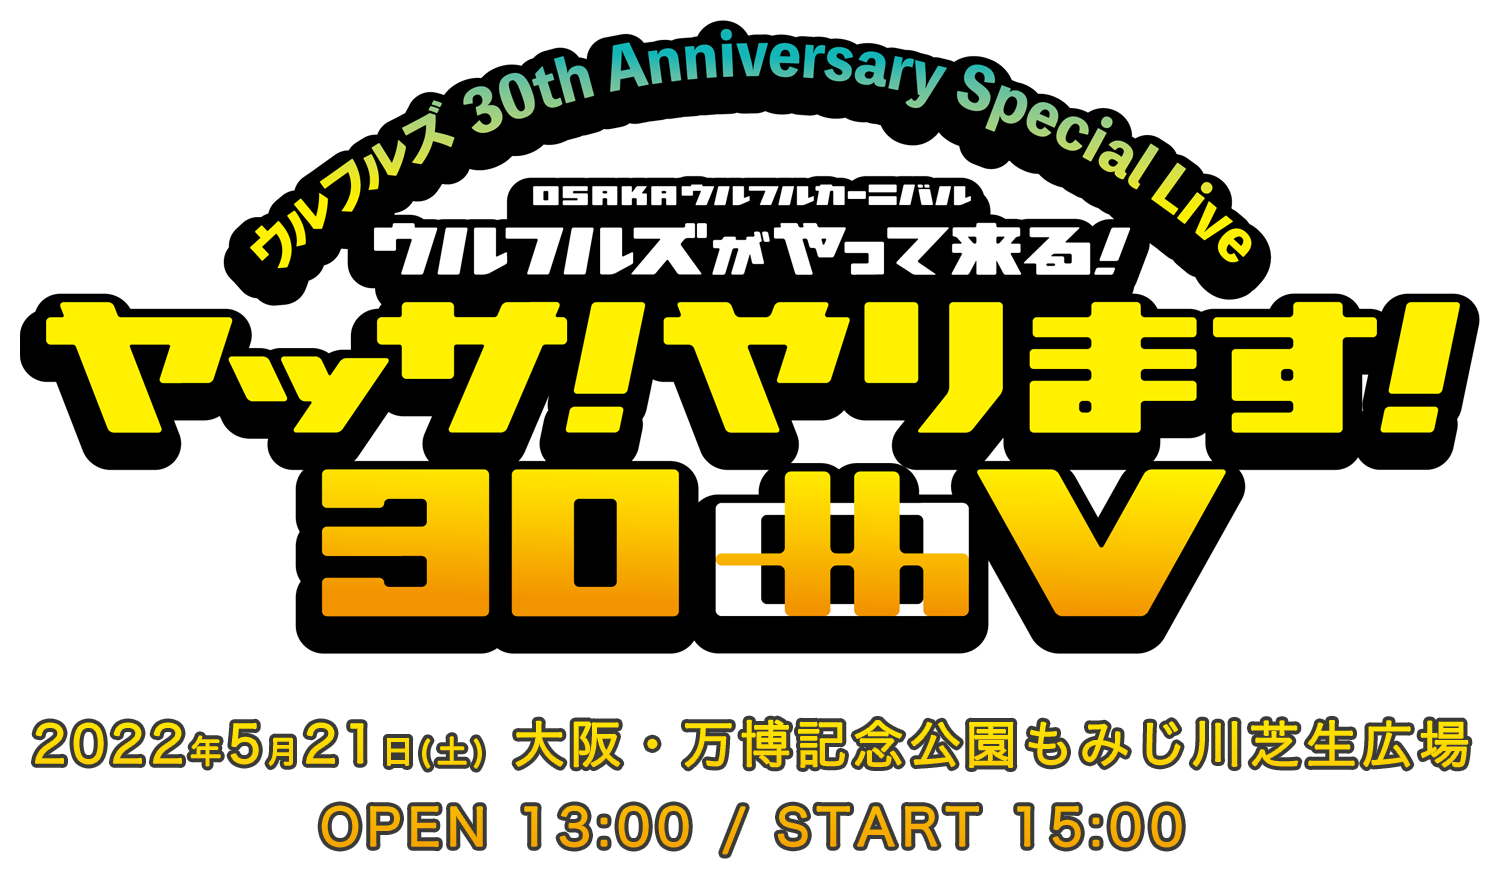 “ウルフルズ 30th Anniversary Special Live” OSAKAウルフルカーニバル ウルフルズがやって来る！ ヤッサ2022